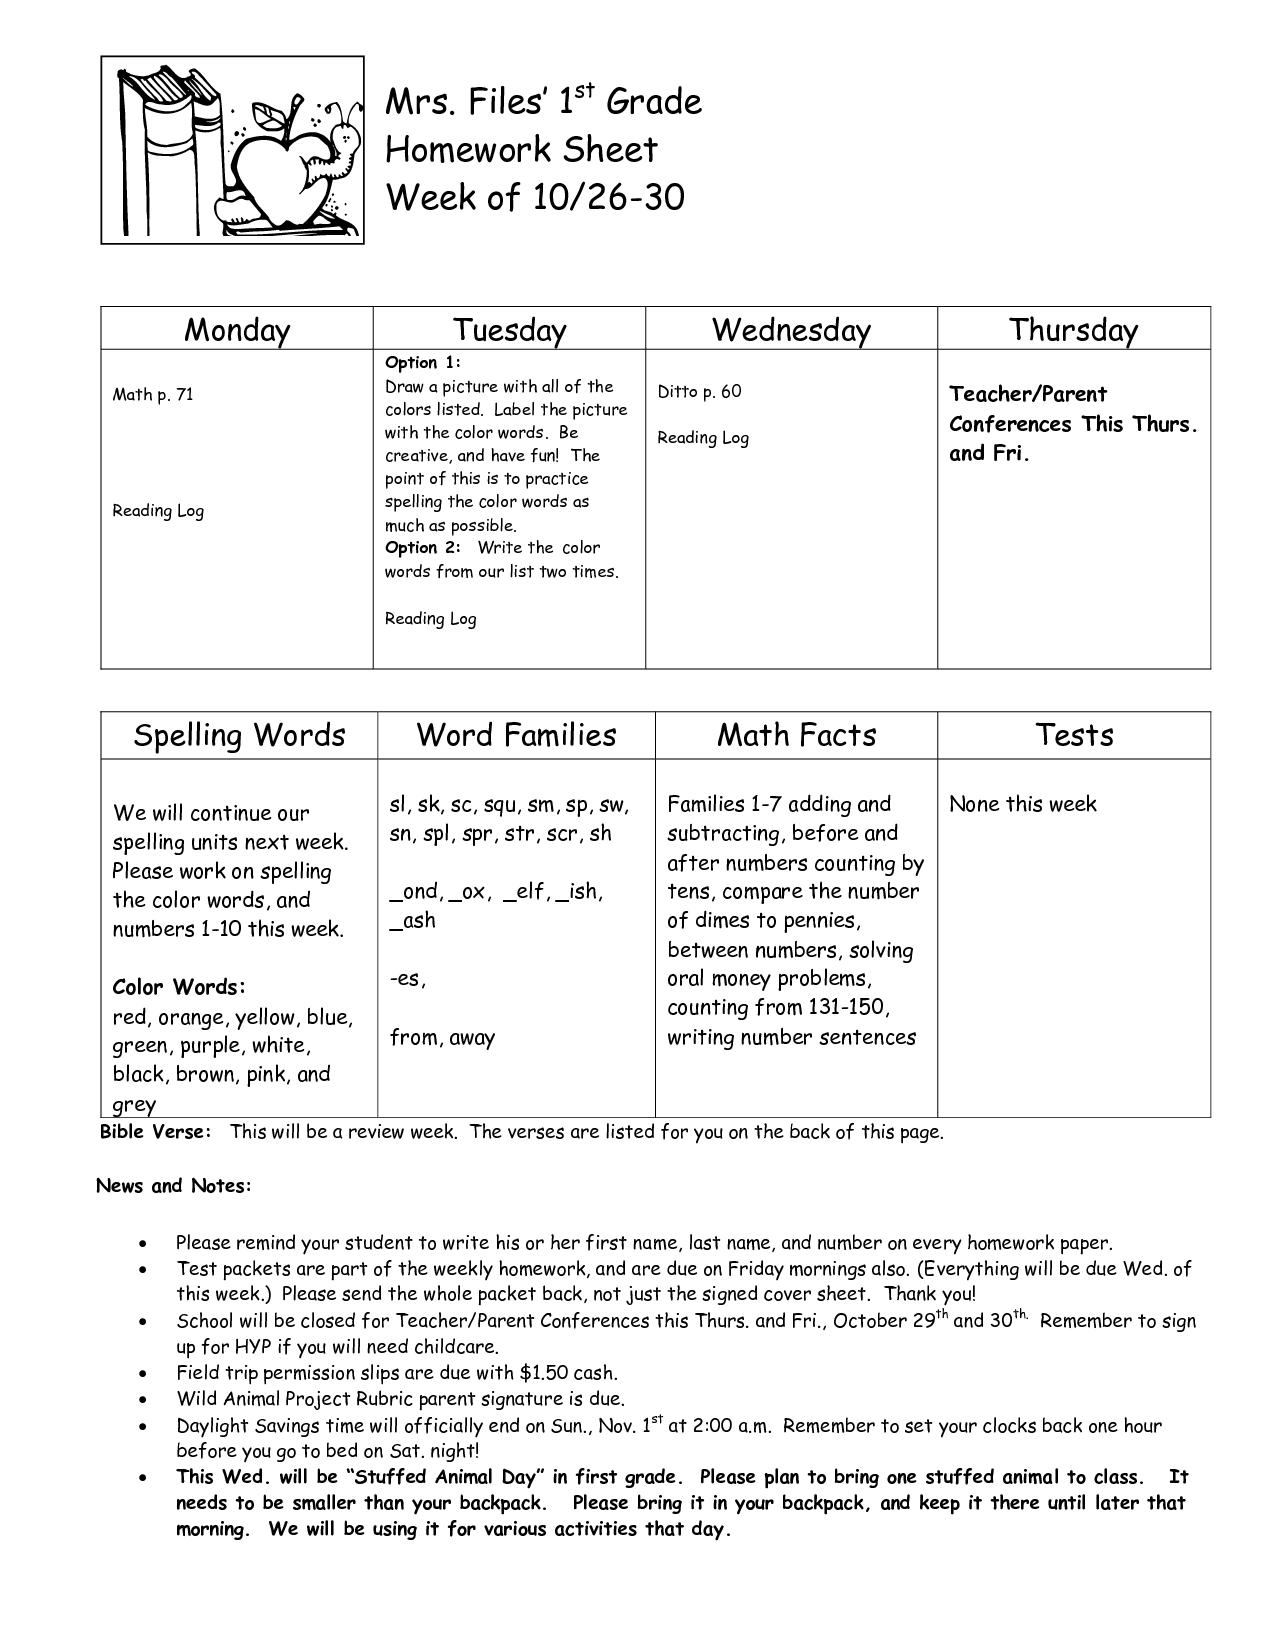 17-first-grade-homework-worksheets-worksheeto